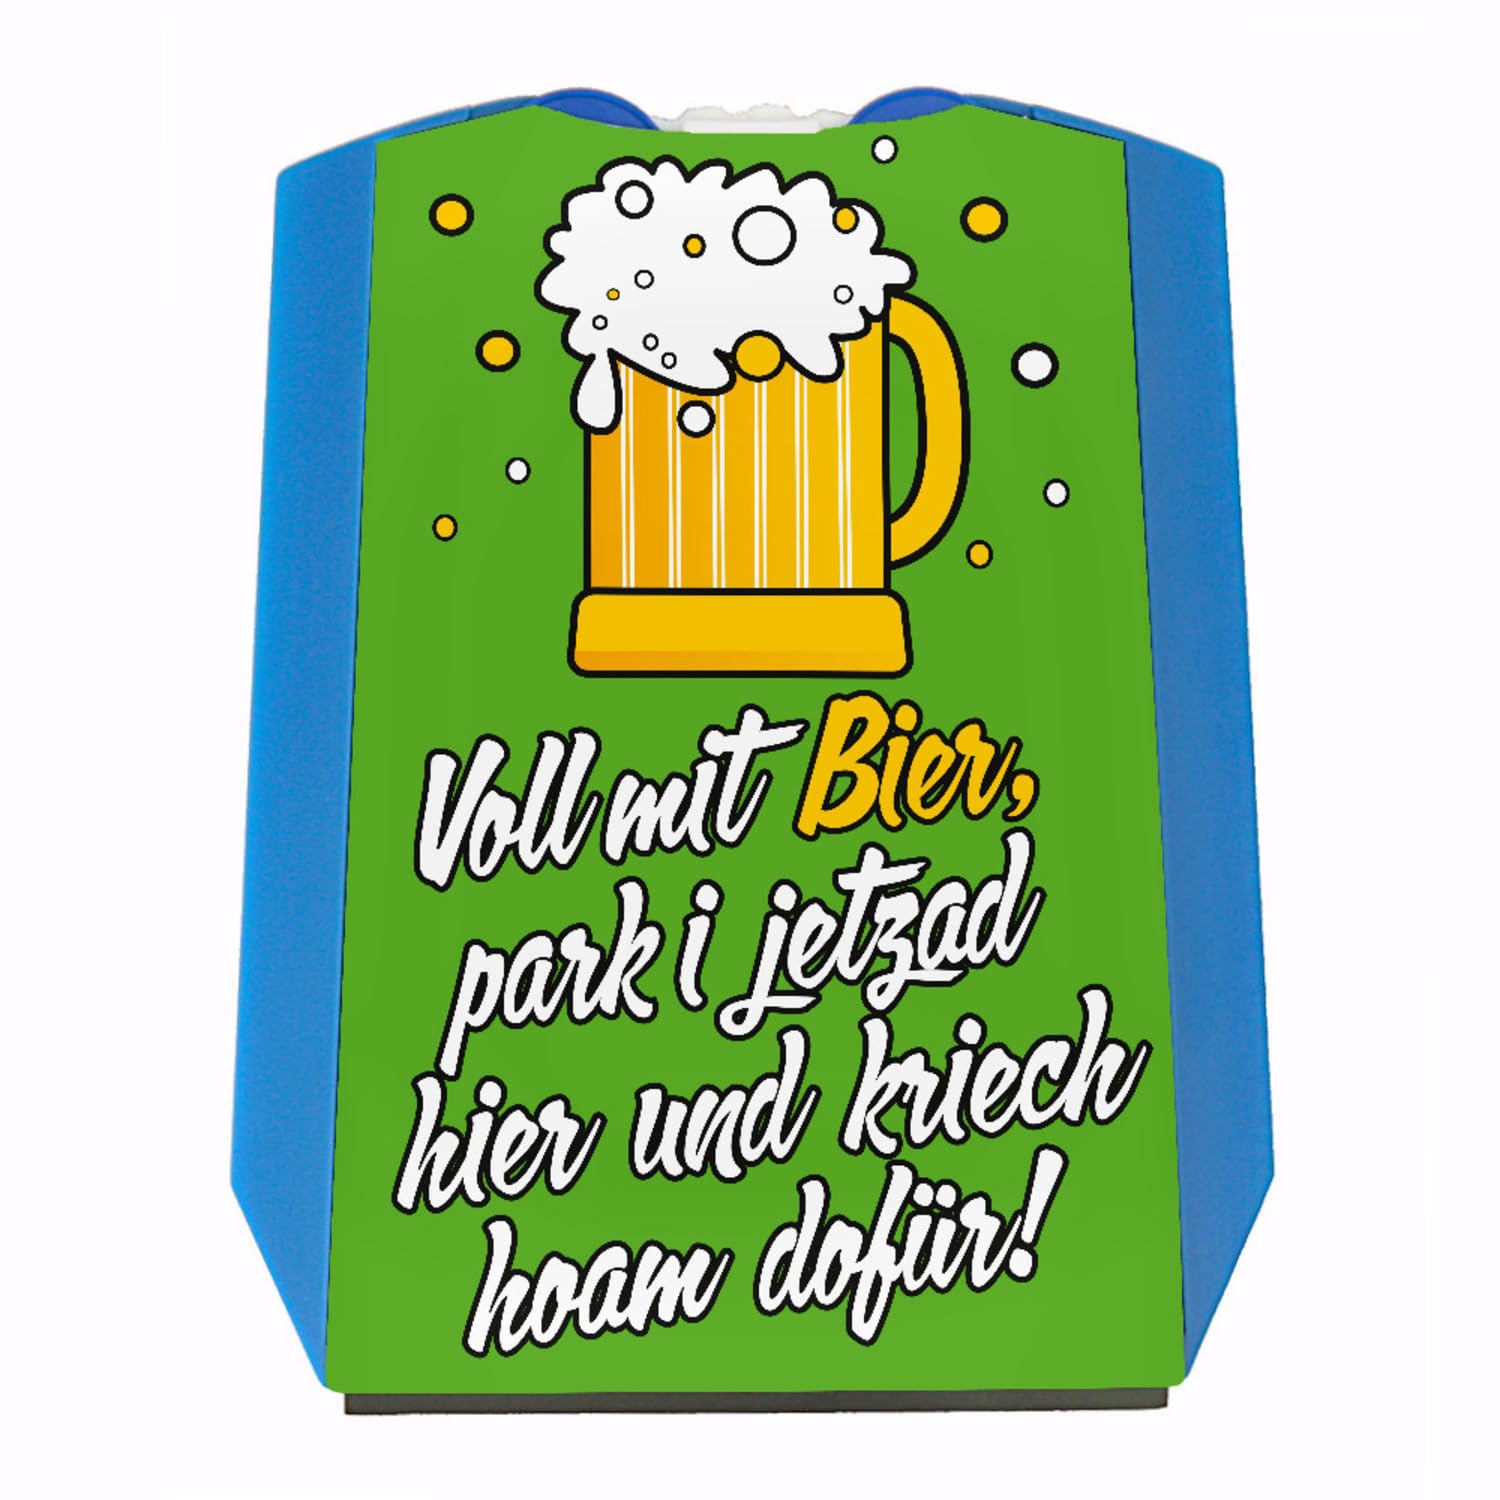 Bayrischer Spruch über Bier Parkscheibe in grün Voll mit Bier Park i jetzad Hier und kriech hoam dafür! Eiskratzer für Bierliebhaber aus Bayern zum Führerschein von speecheese